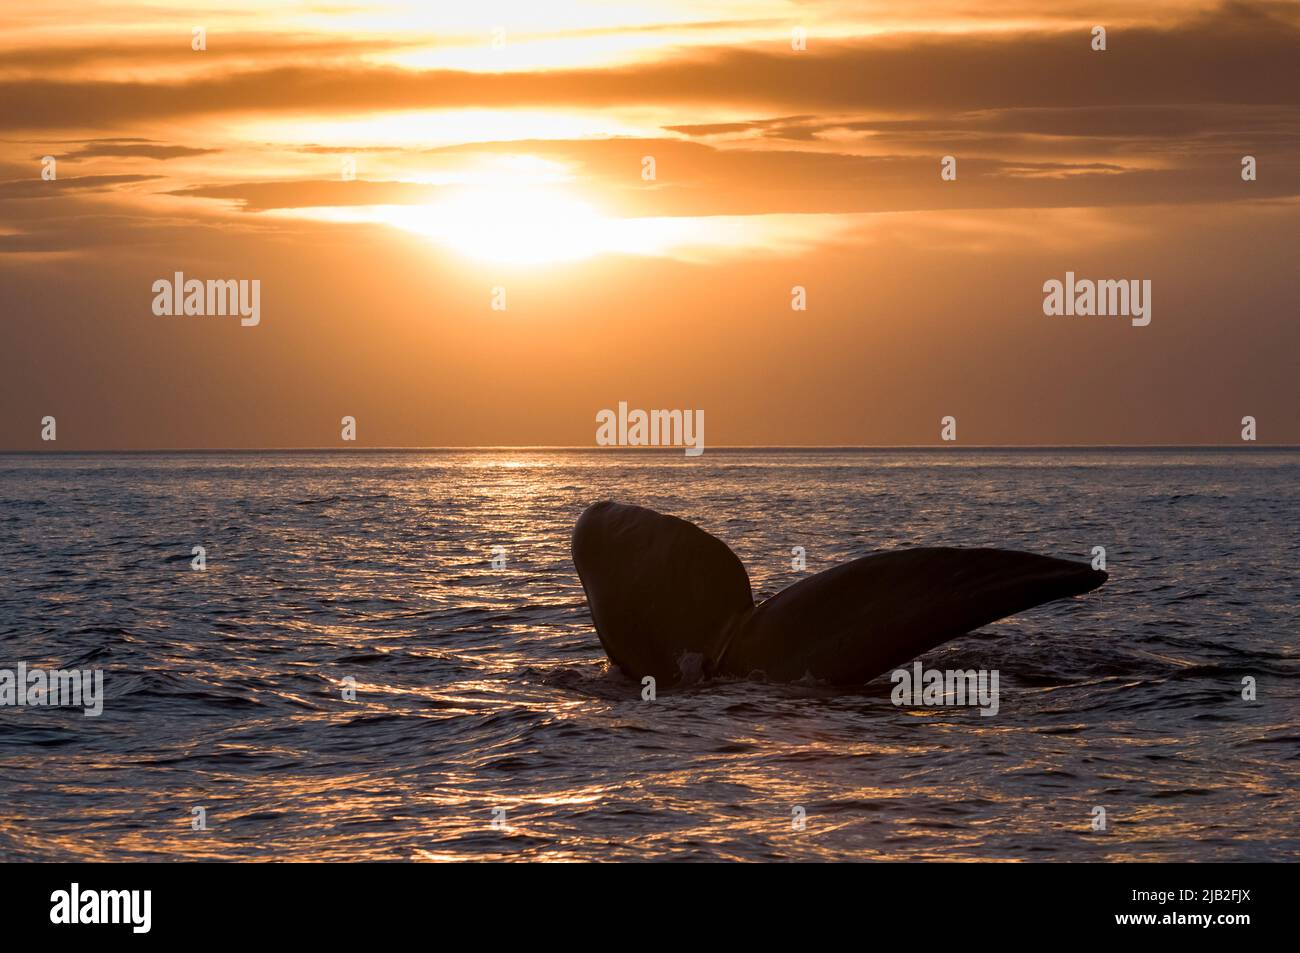 Queue de baleine méridionale, Peninsula Valdes, site du patrimoine mondial, Patagonie, Argentine. Banque D'Images